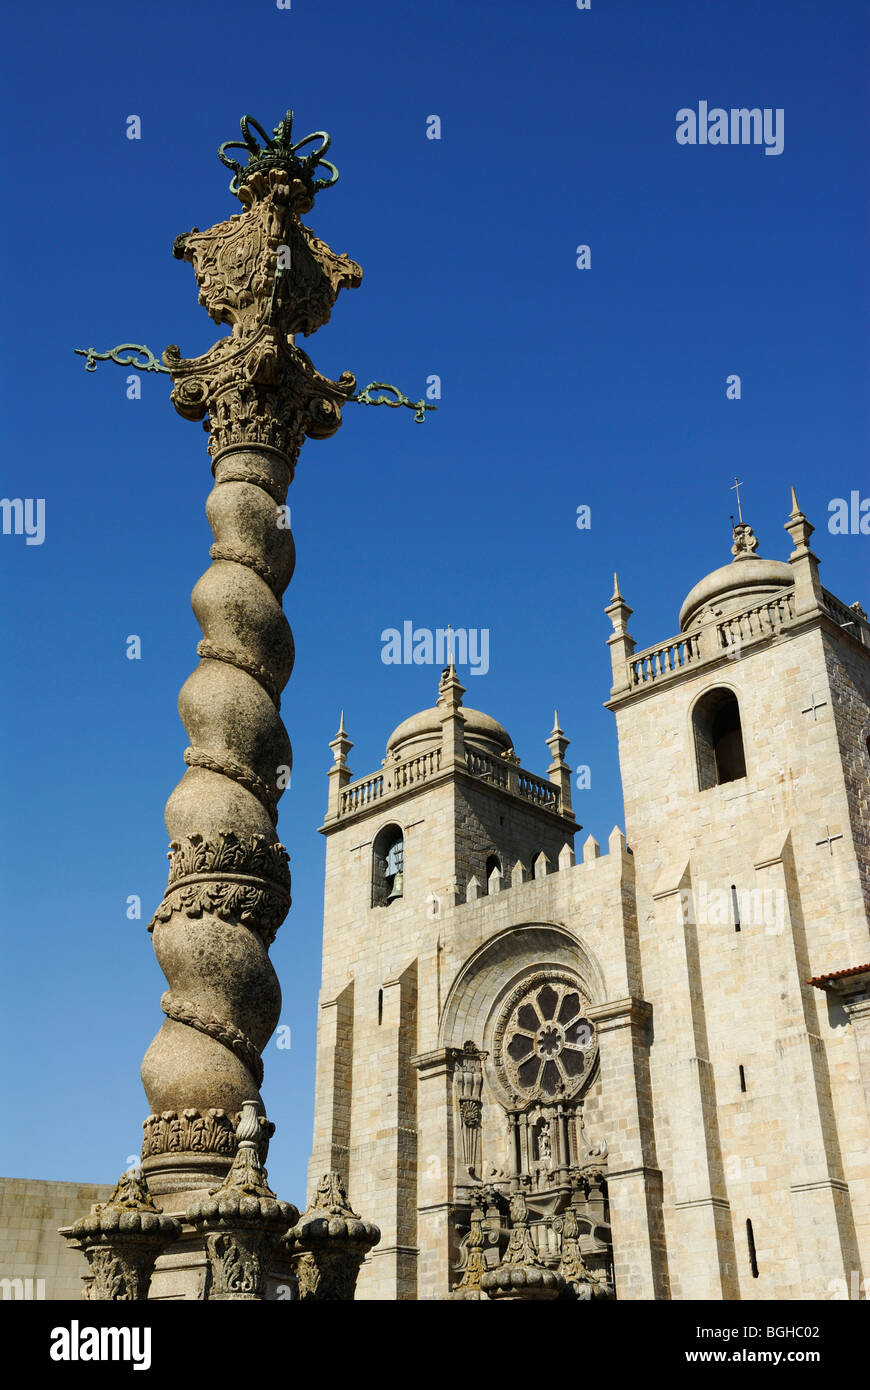 Porto. Le Portugal. La cathédrale Sé et de pierre richement conçu pilori ou pelourinho. Banque D'Images